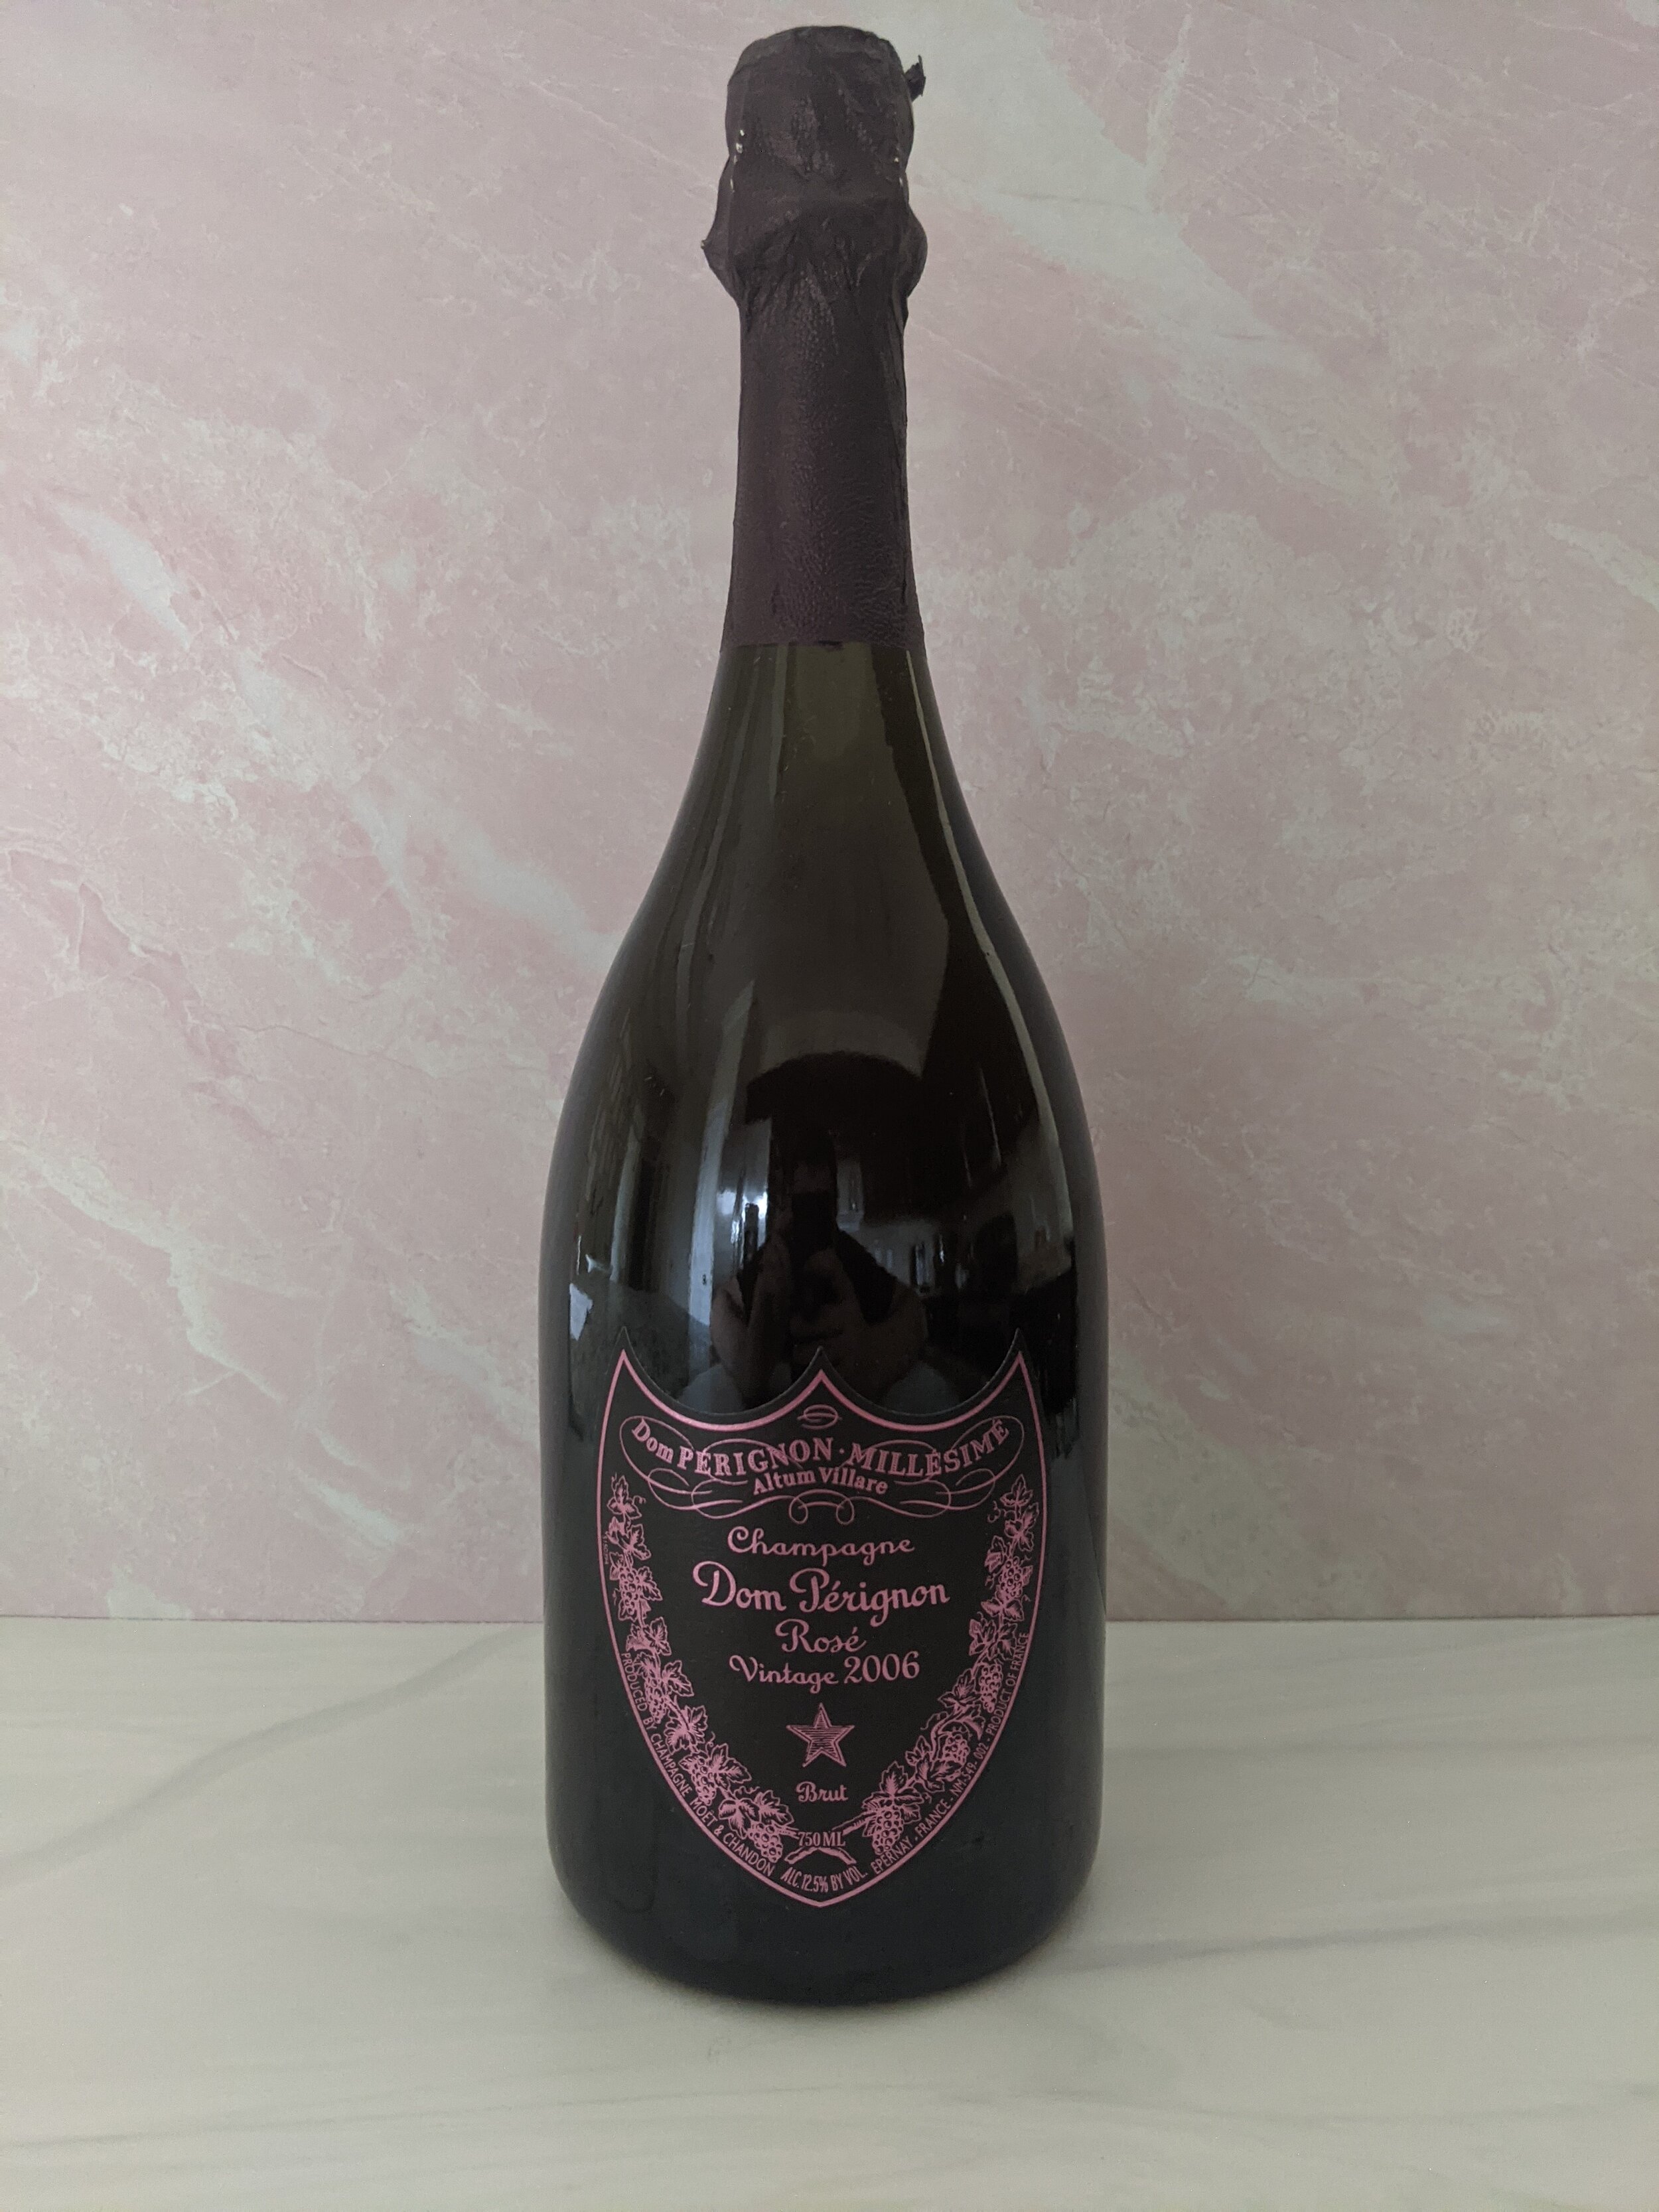 Moet & Chandon Champagne Grand Vintage Rose, 2004 -  750 ml bottle